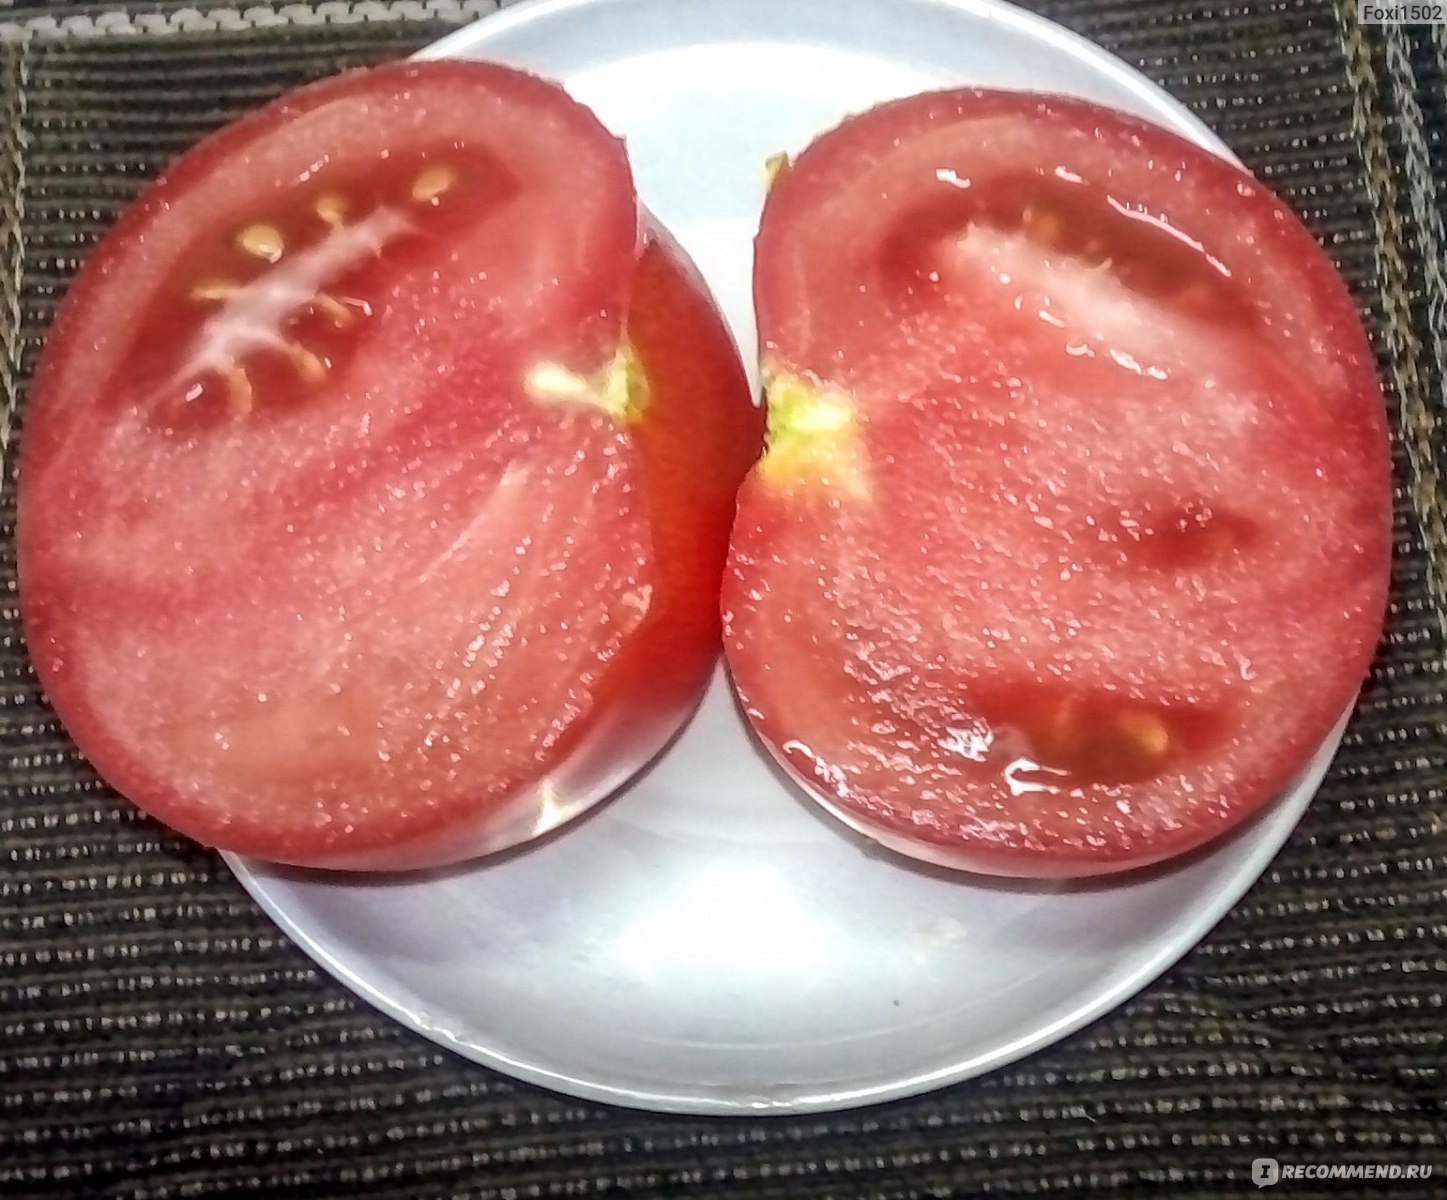 Сорта помидор не подверженные вершинной гнили